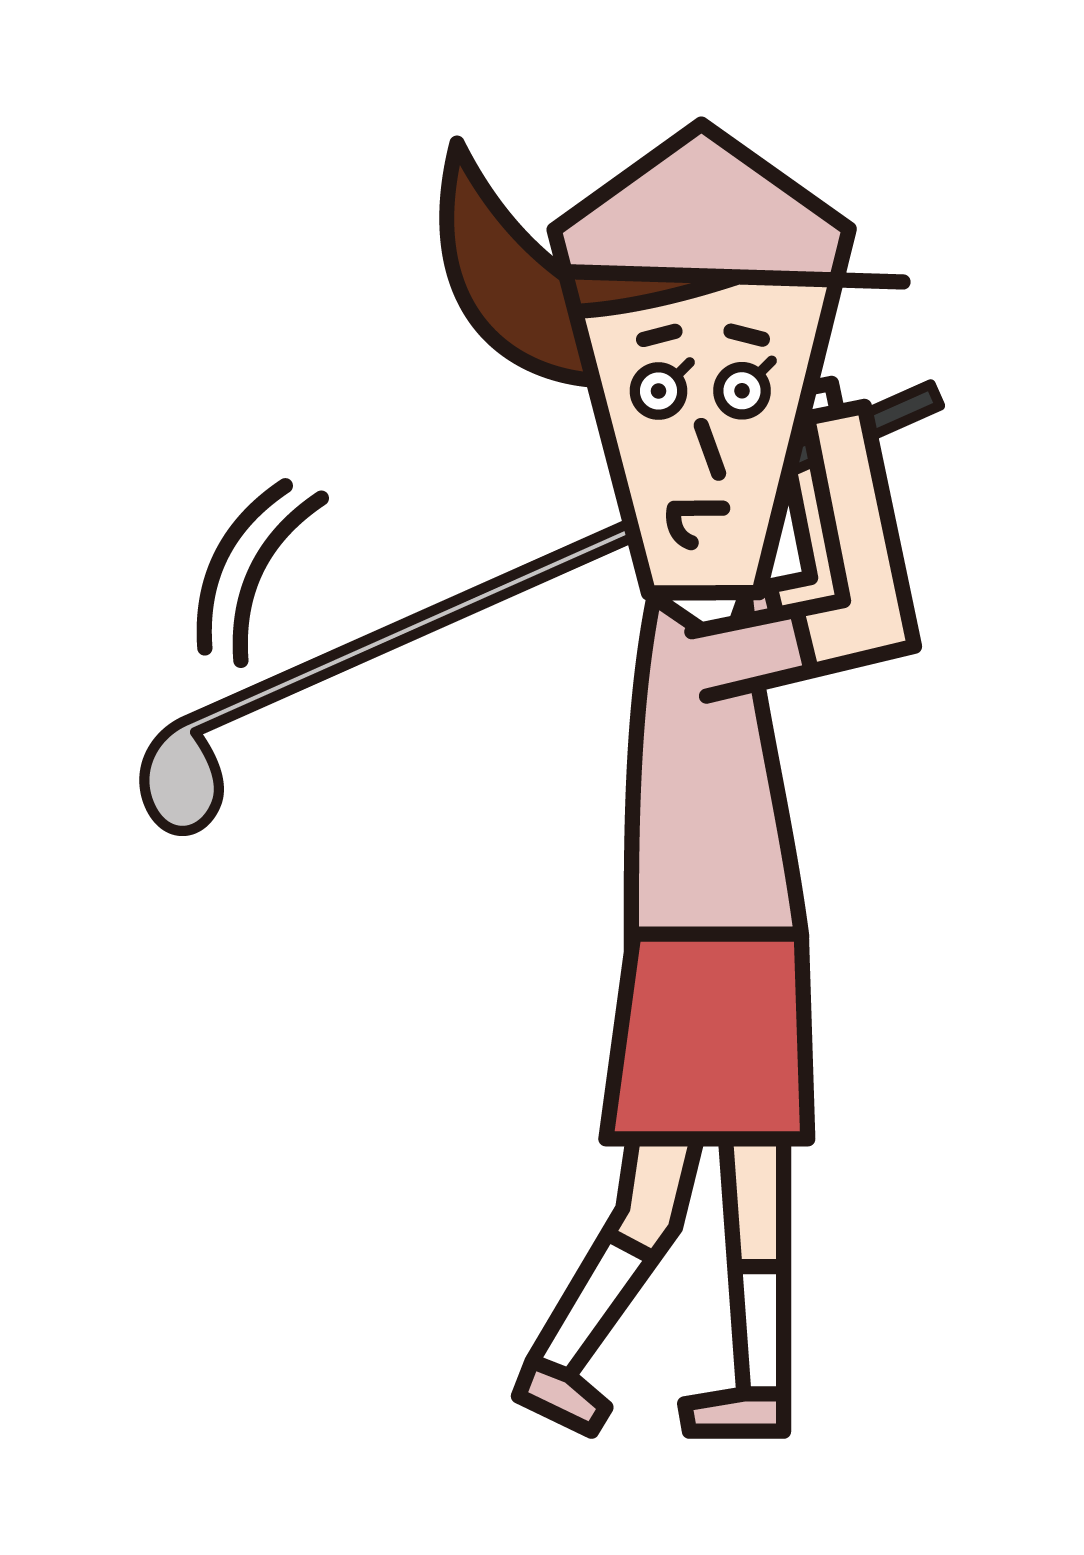 골프를 가장하는 사람(여성)의 삽화